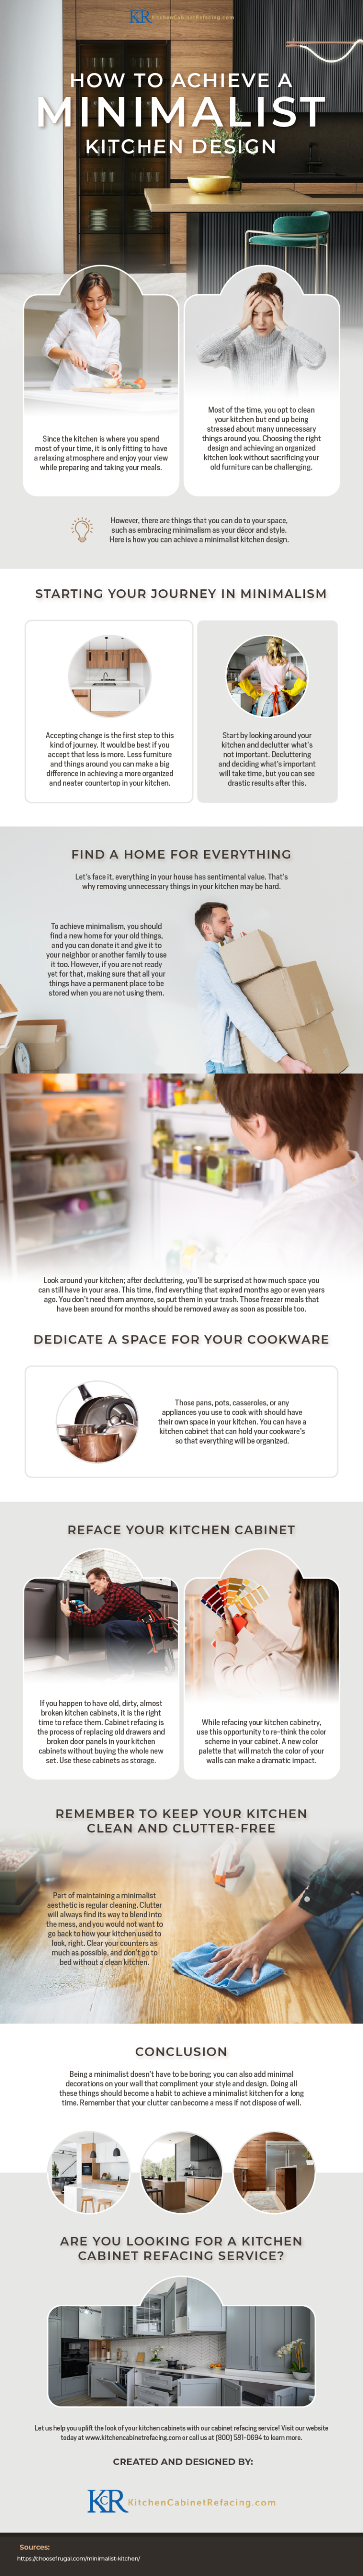 how-to-achieve-a-minimalist-kitchen-design-wadw124